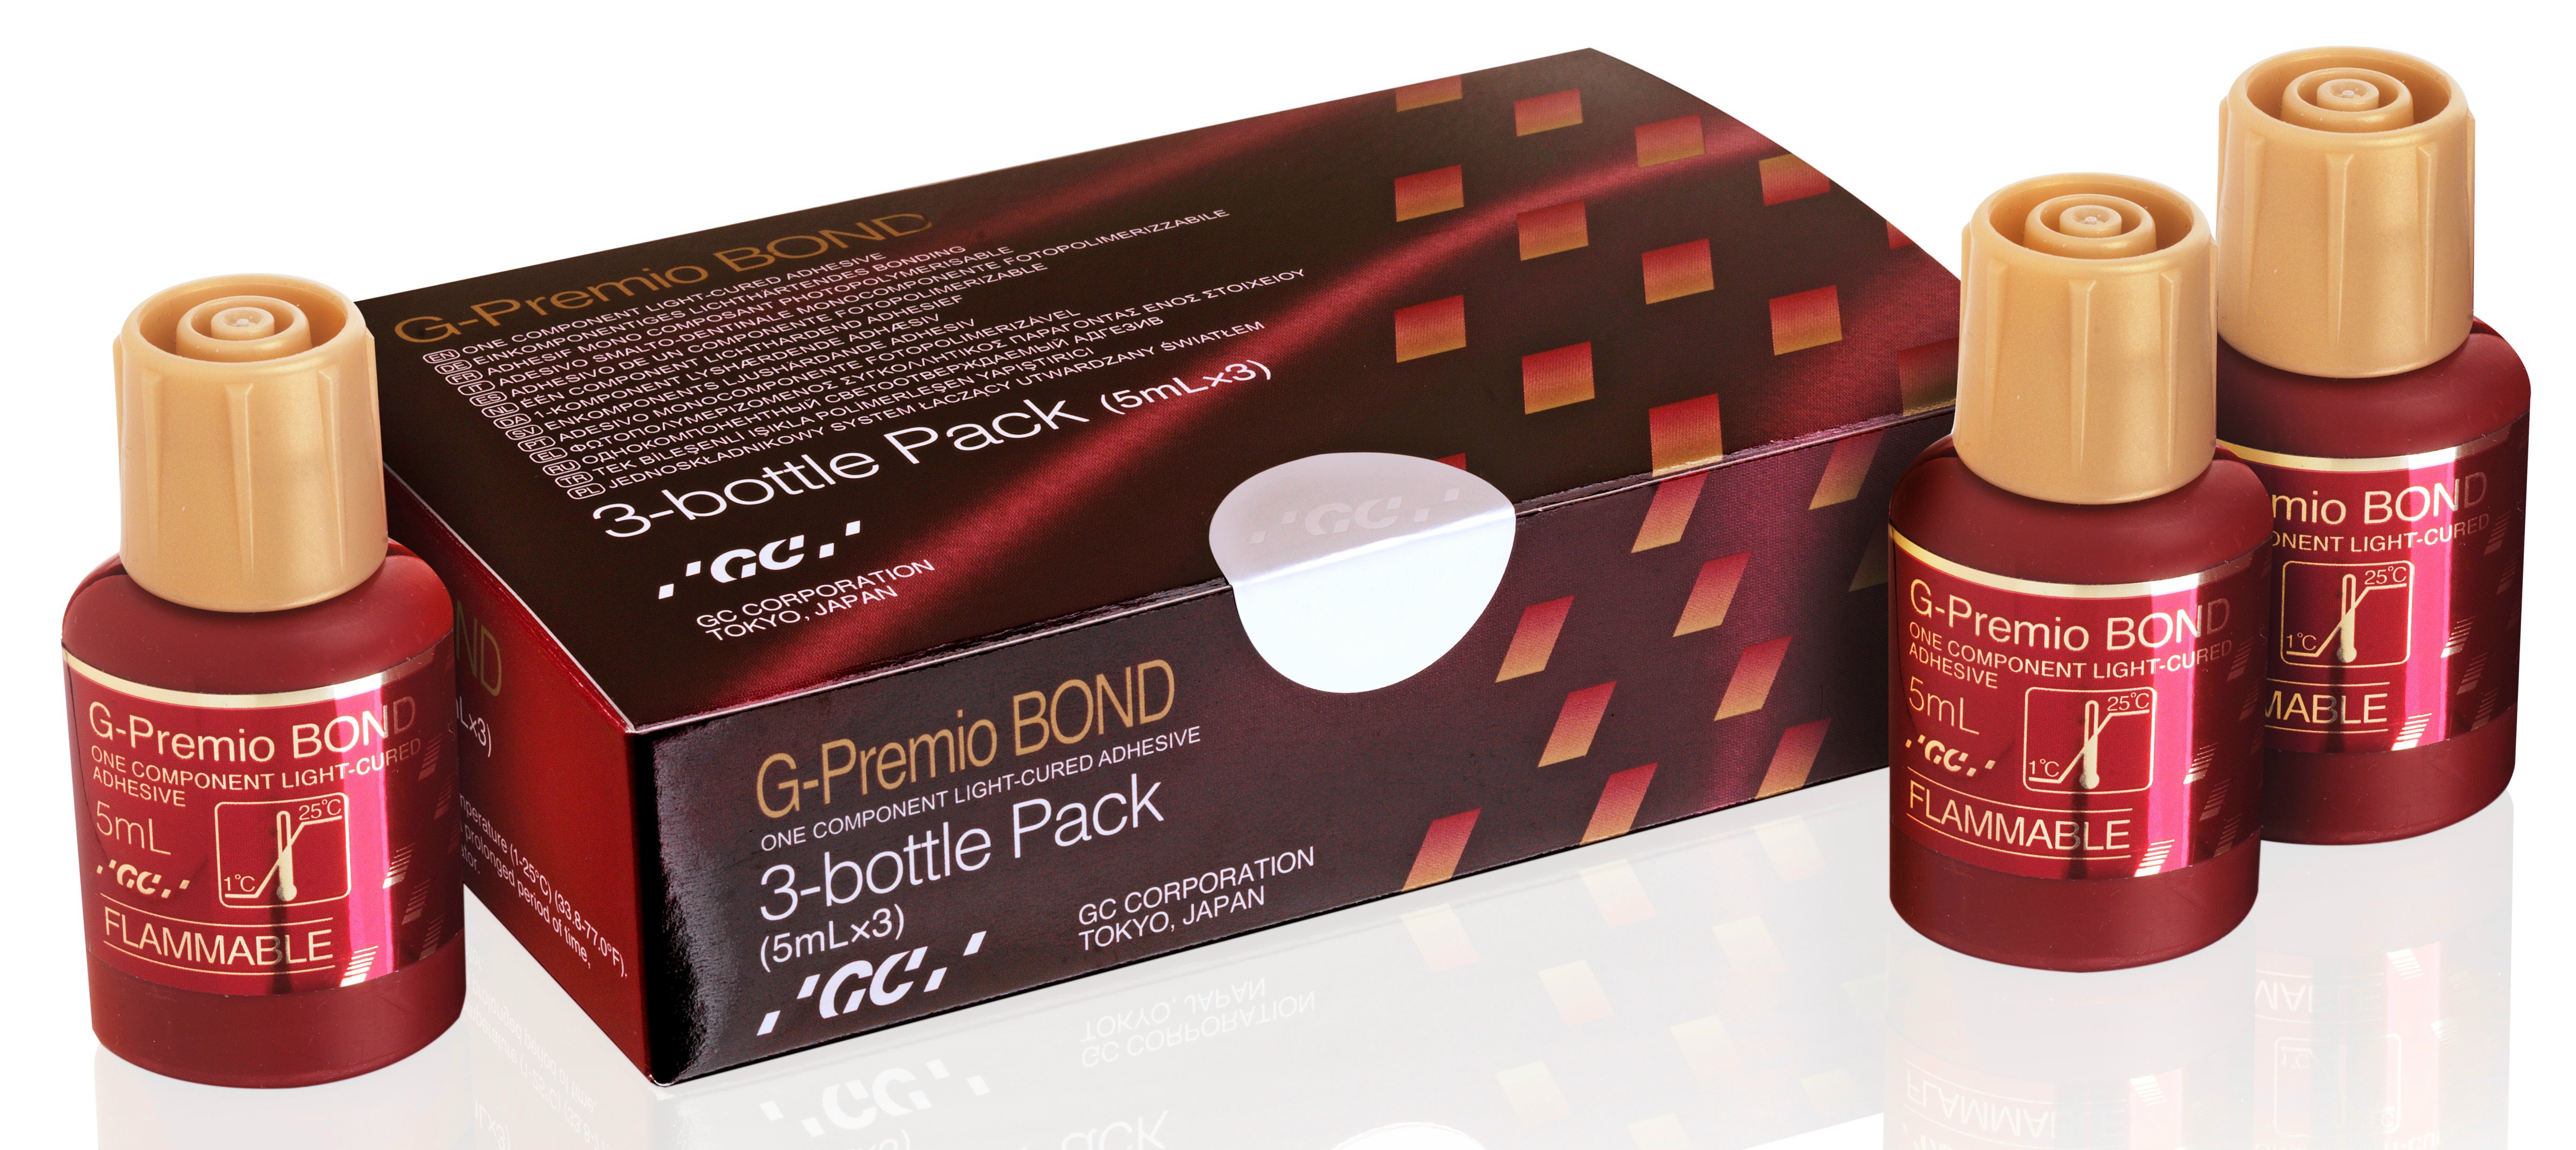 G-Premio Bond 3-bottle pack, EEP